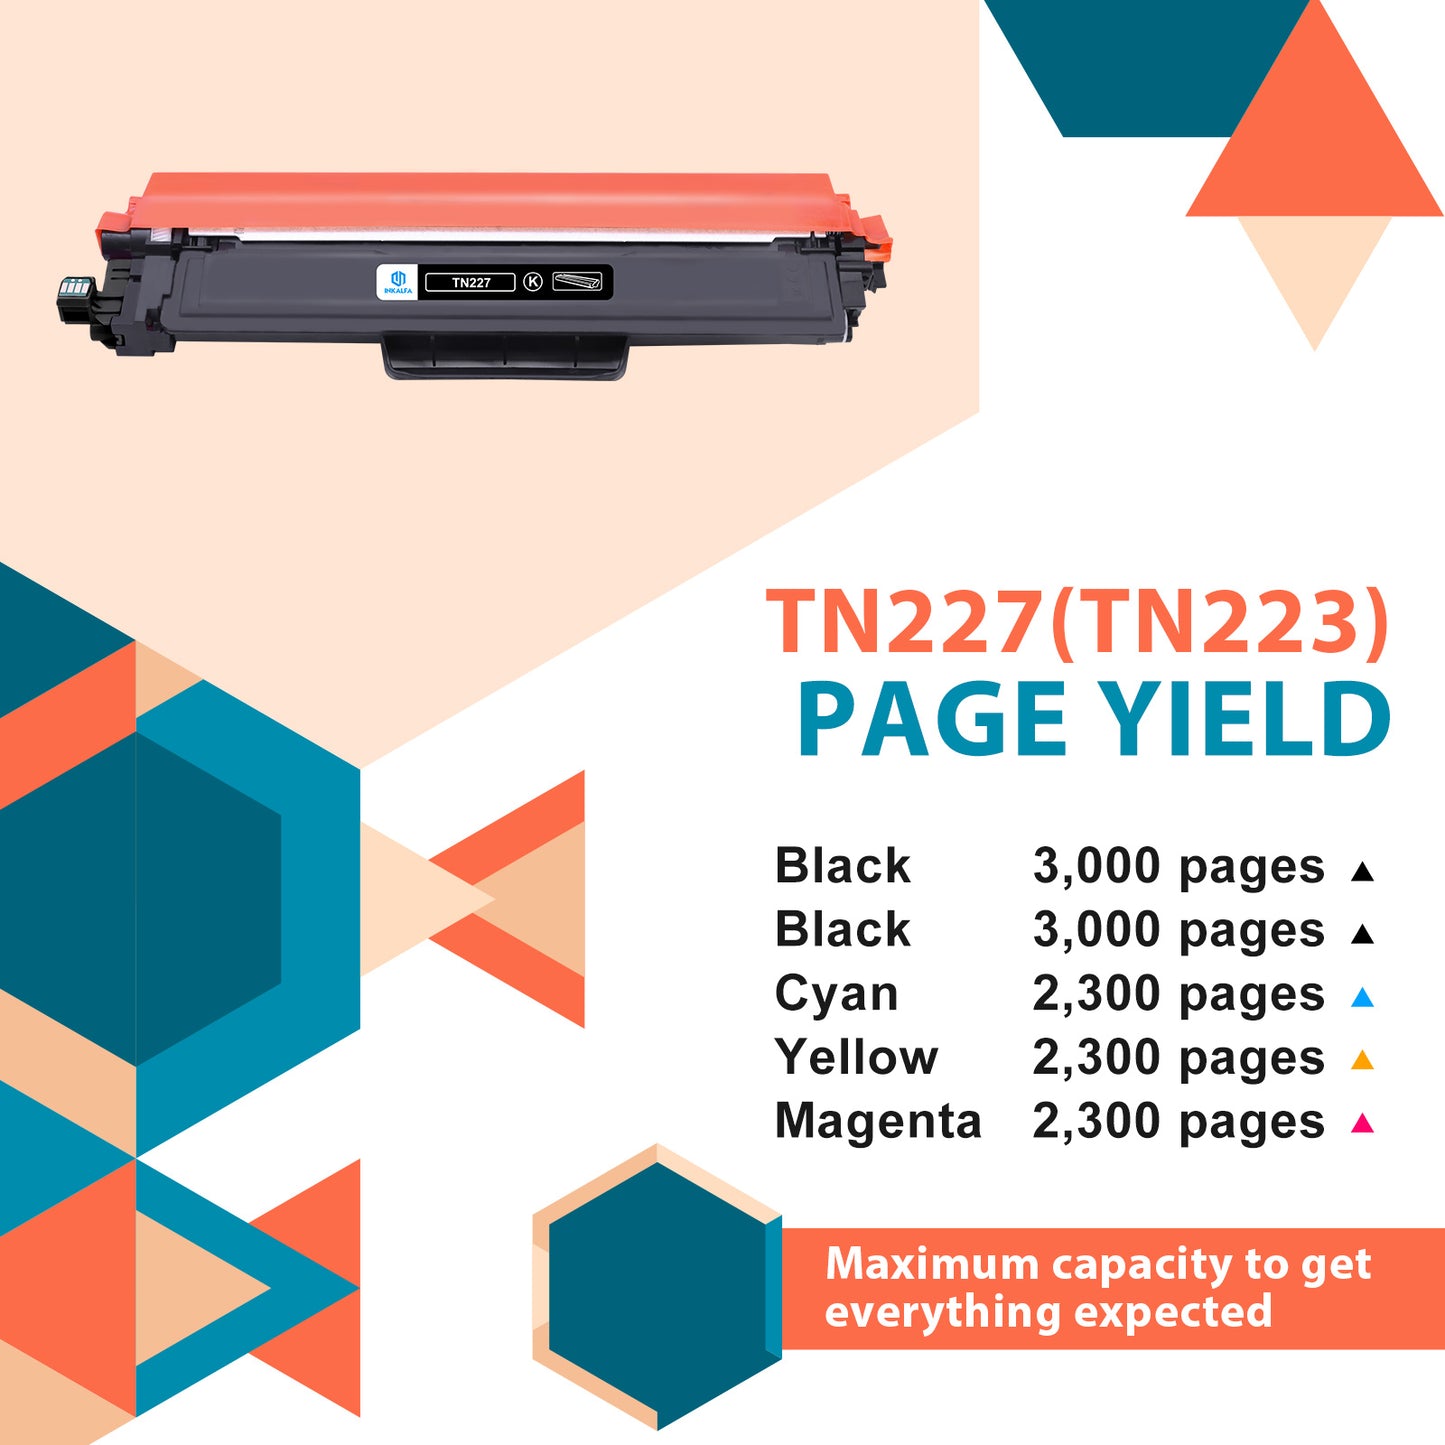 Inkalfa Compatible TN227 Toner Cartridge: Replacement for Brother TN227 TN223 TN-227 TN-223 TN227BK MFC-L3770CDW HL-L3290CDW HL-L3270CDW MFCL3750CDW MFC-L3710CW Printer (5PK TN-227BK/C/M/Y High Yield)